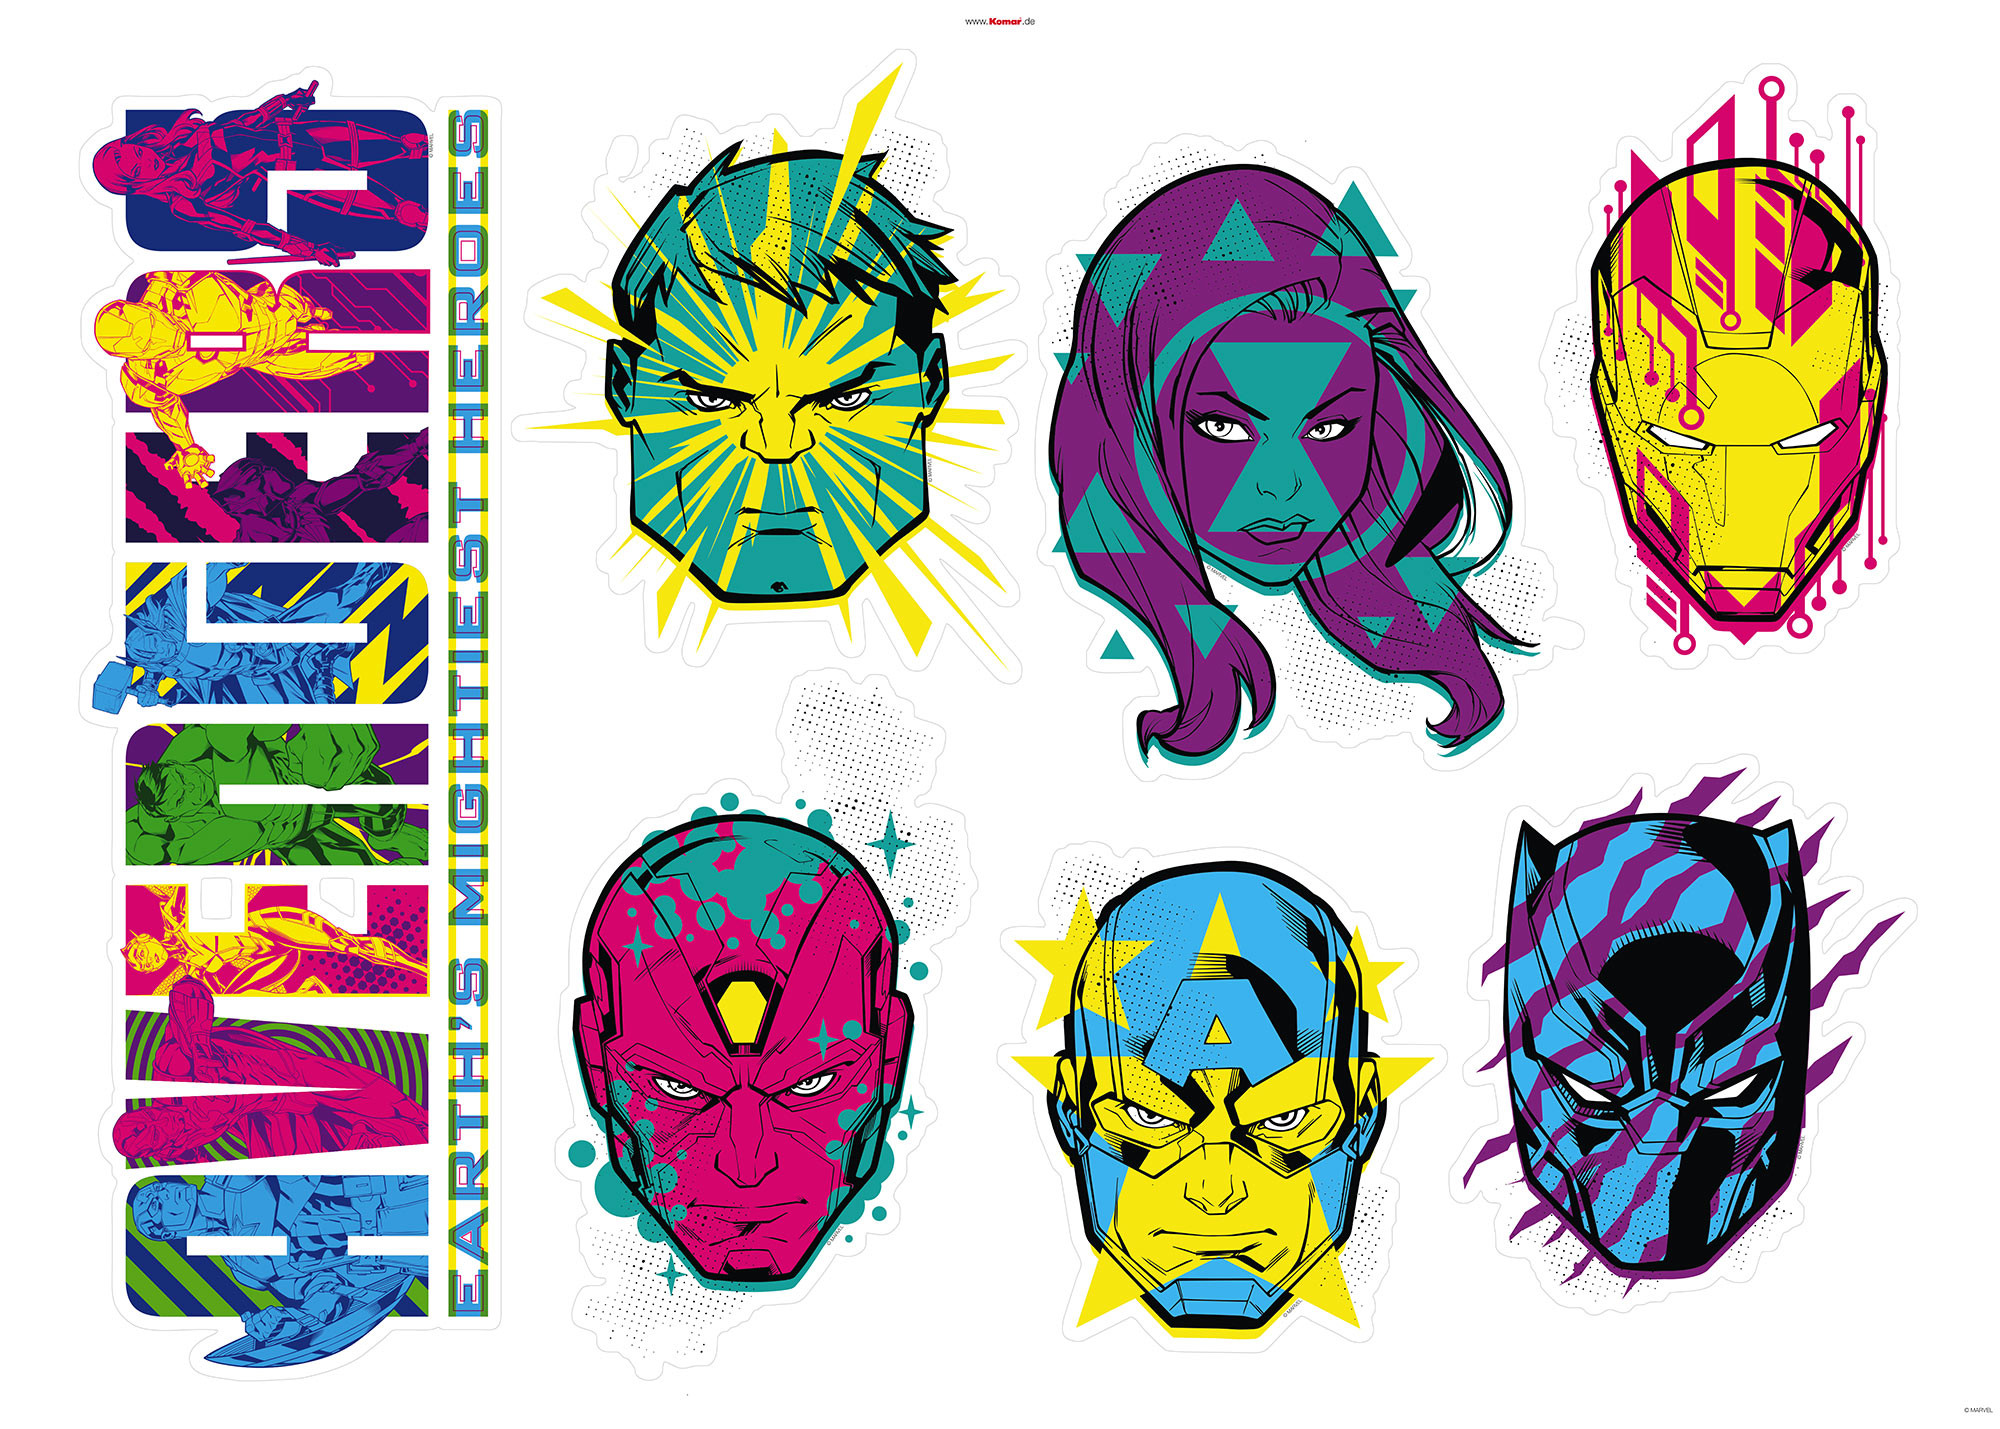 Marvel - les univers marvel : stickers - la tour des avengers